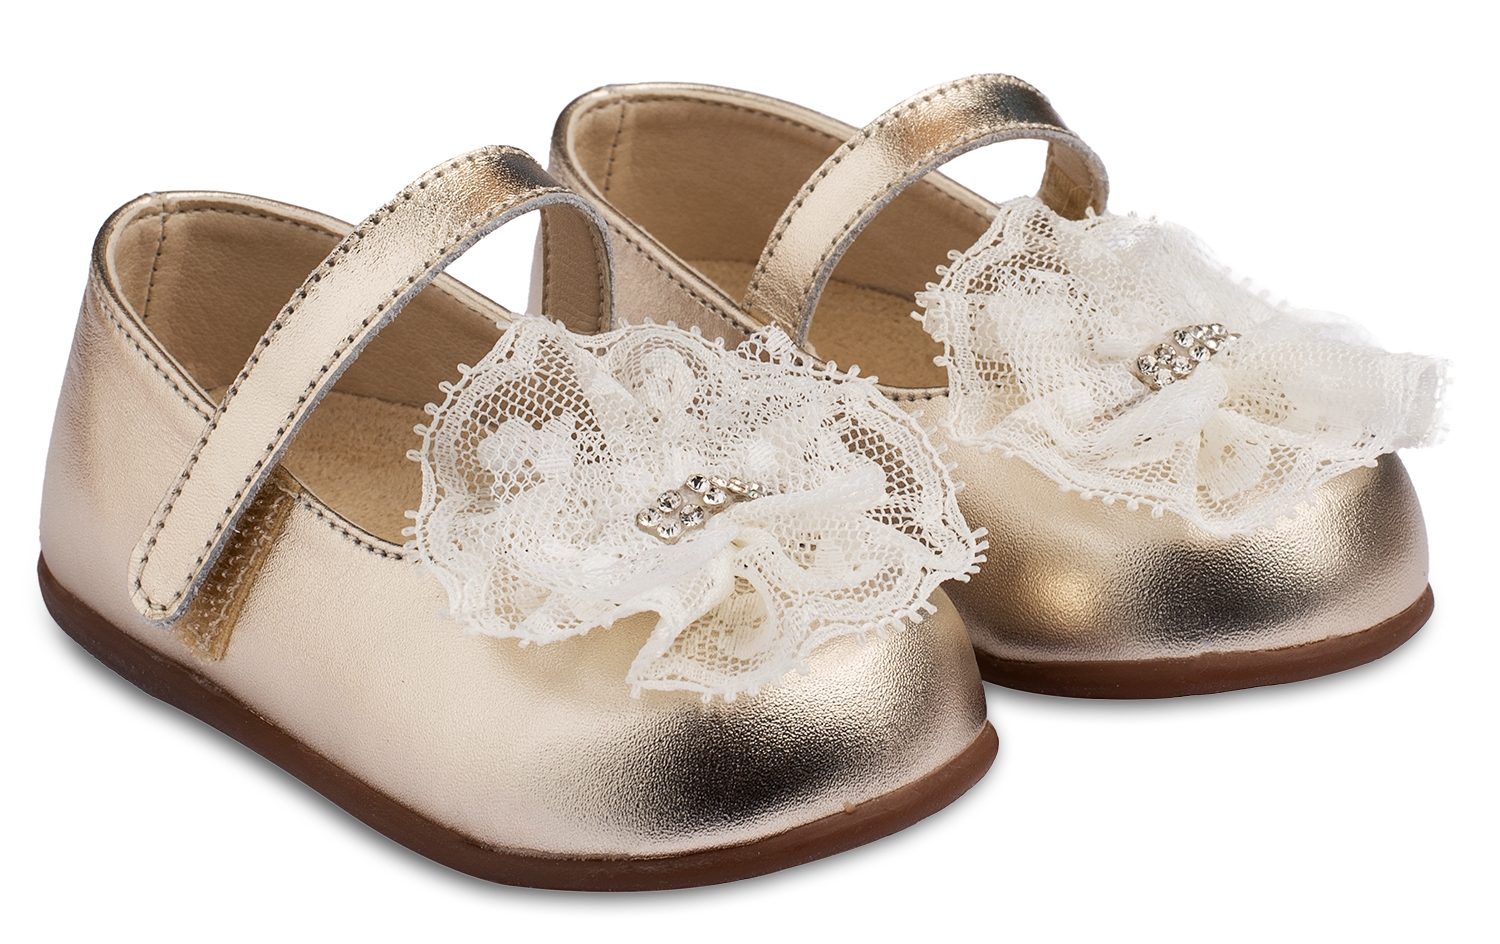 Babywalker Δαντέλα Gold - Βαπτιστικά παπούτσια για κορίτσι